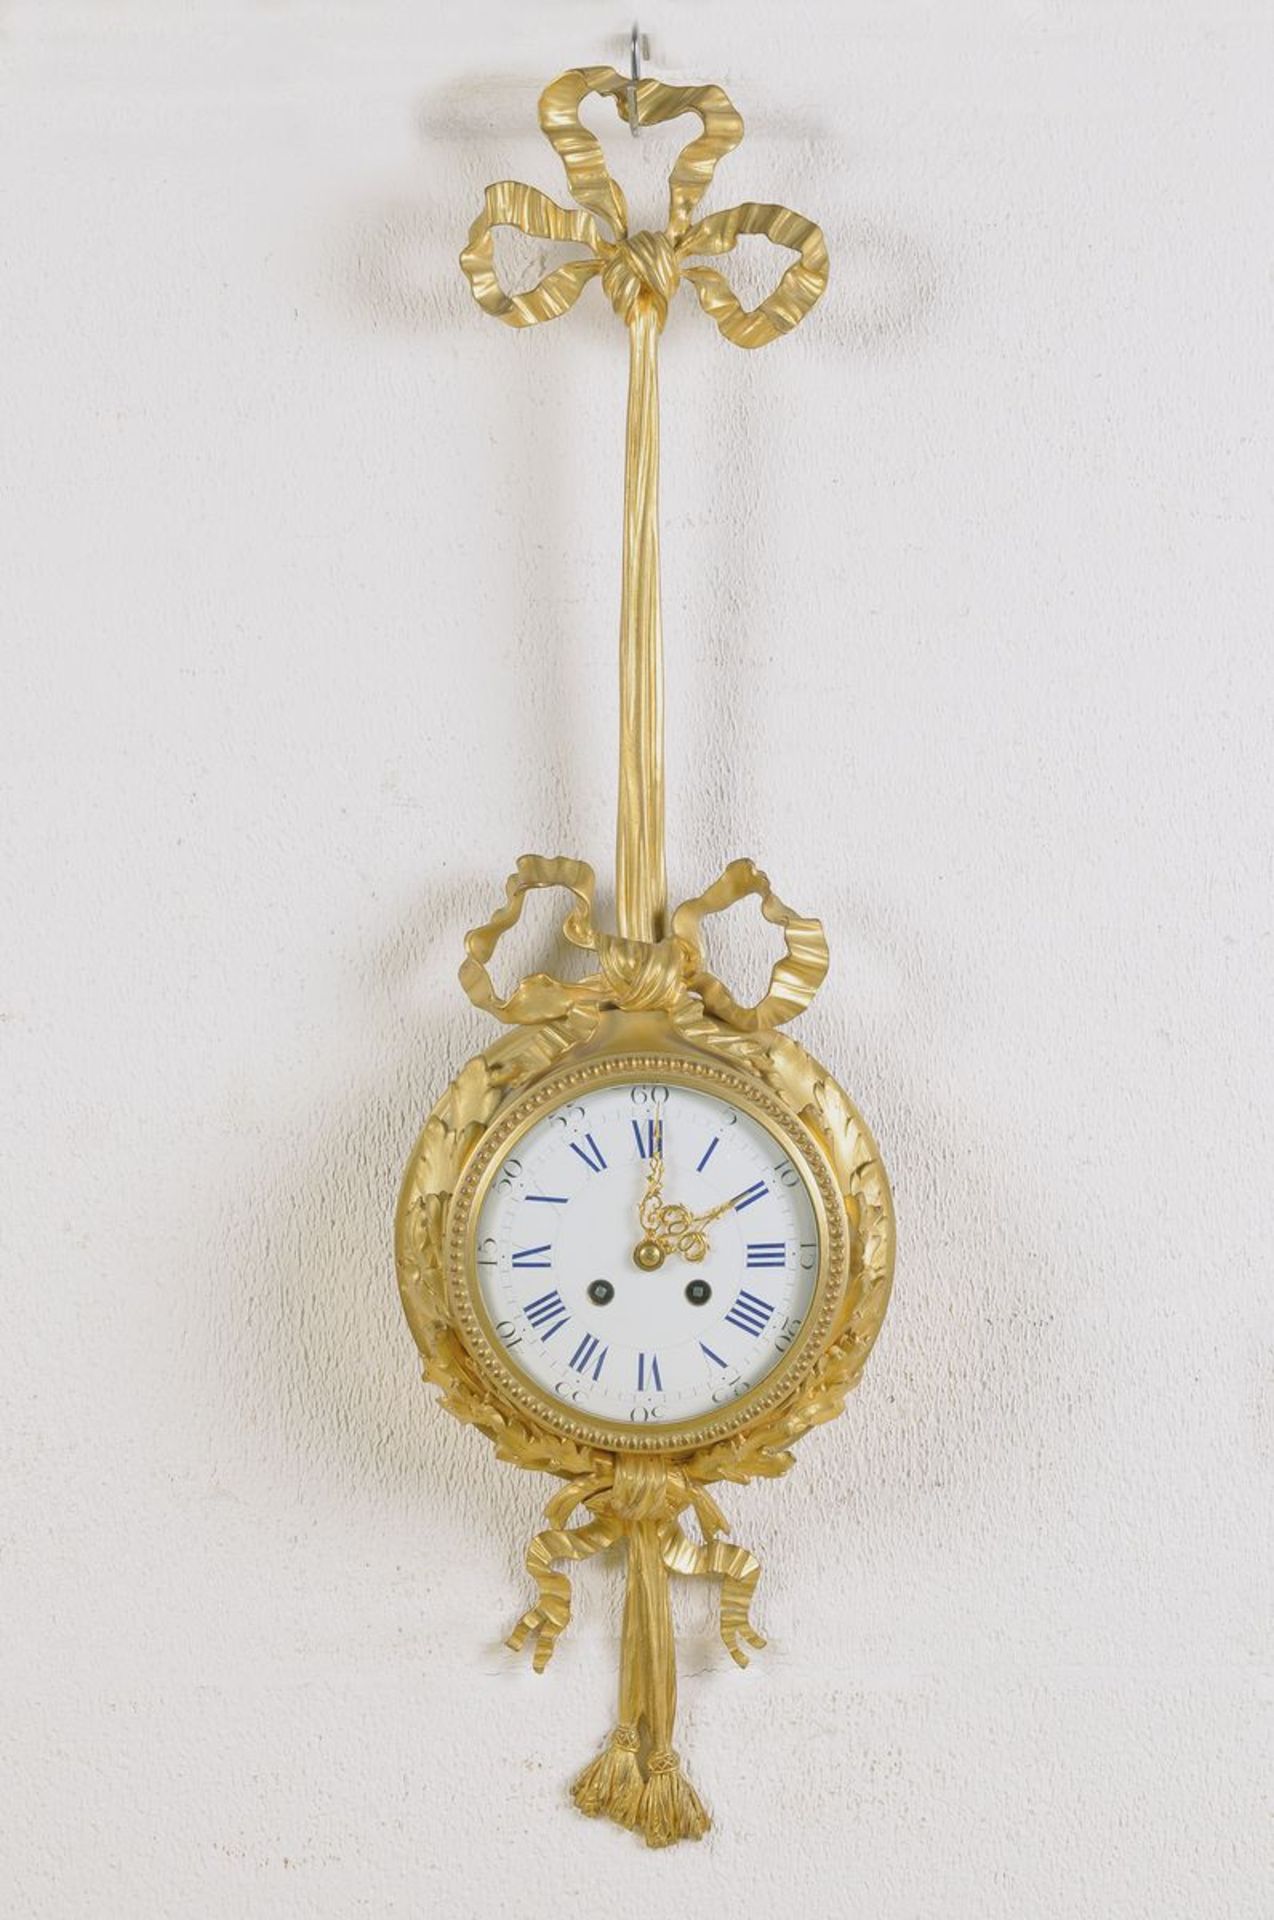 Kartelluhr, Frankreich, um 1880, Gehäuse Bronze feuervergoldet mit Schleifendekor, Uhr wird